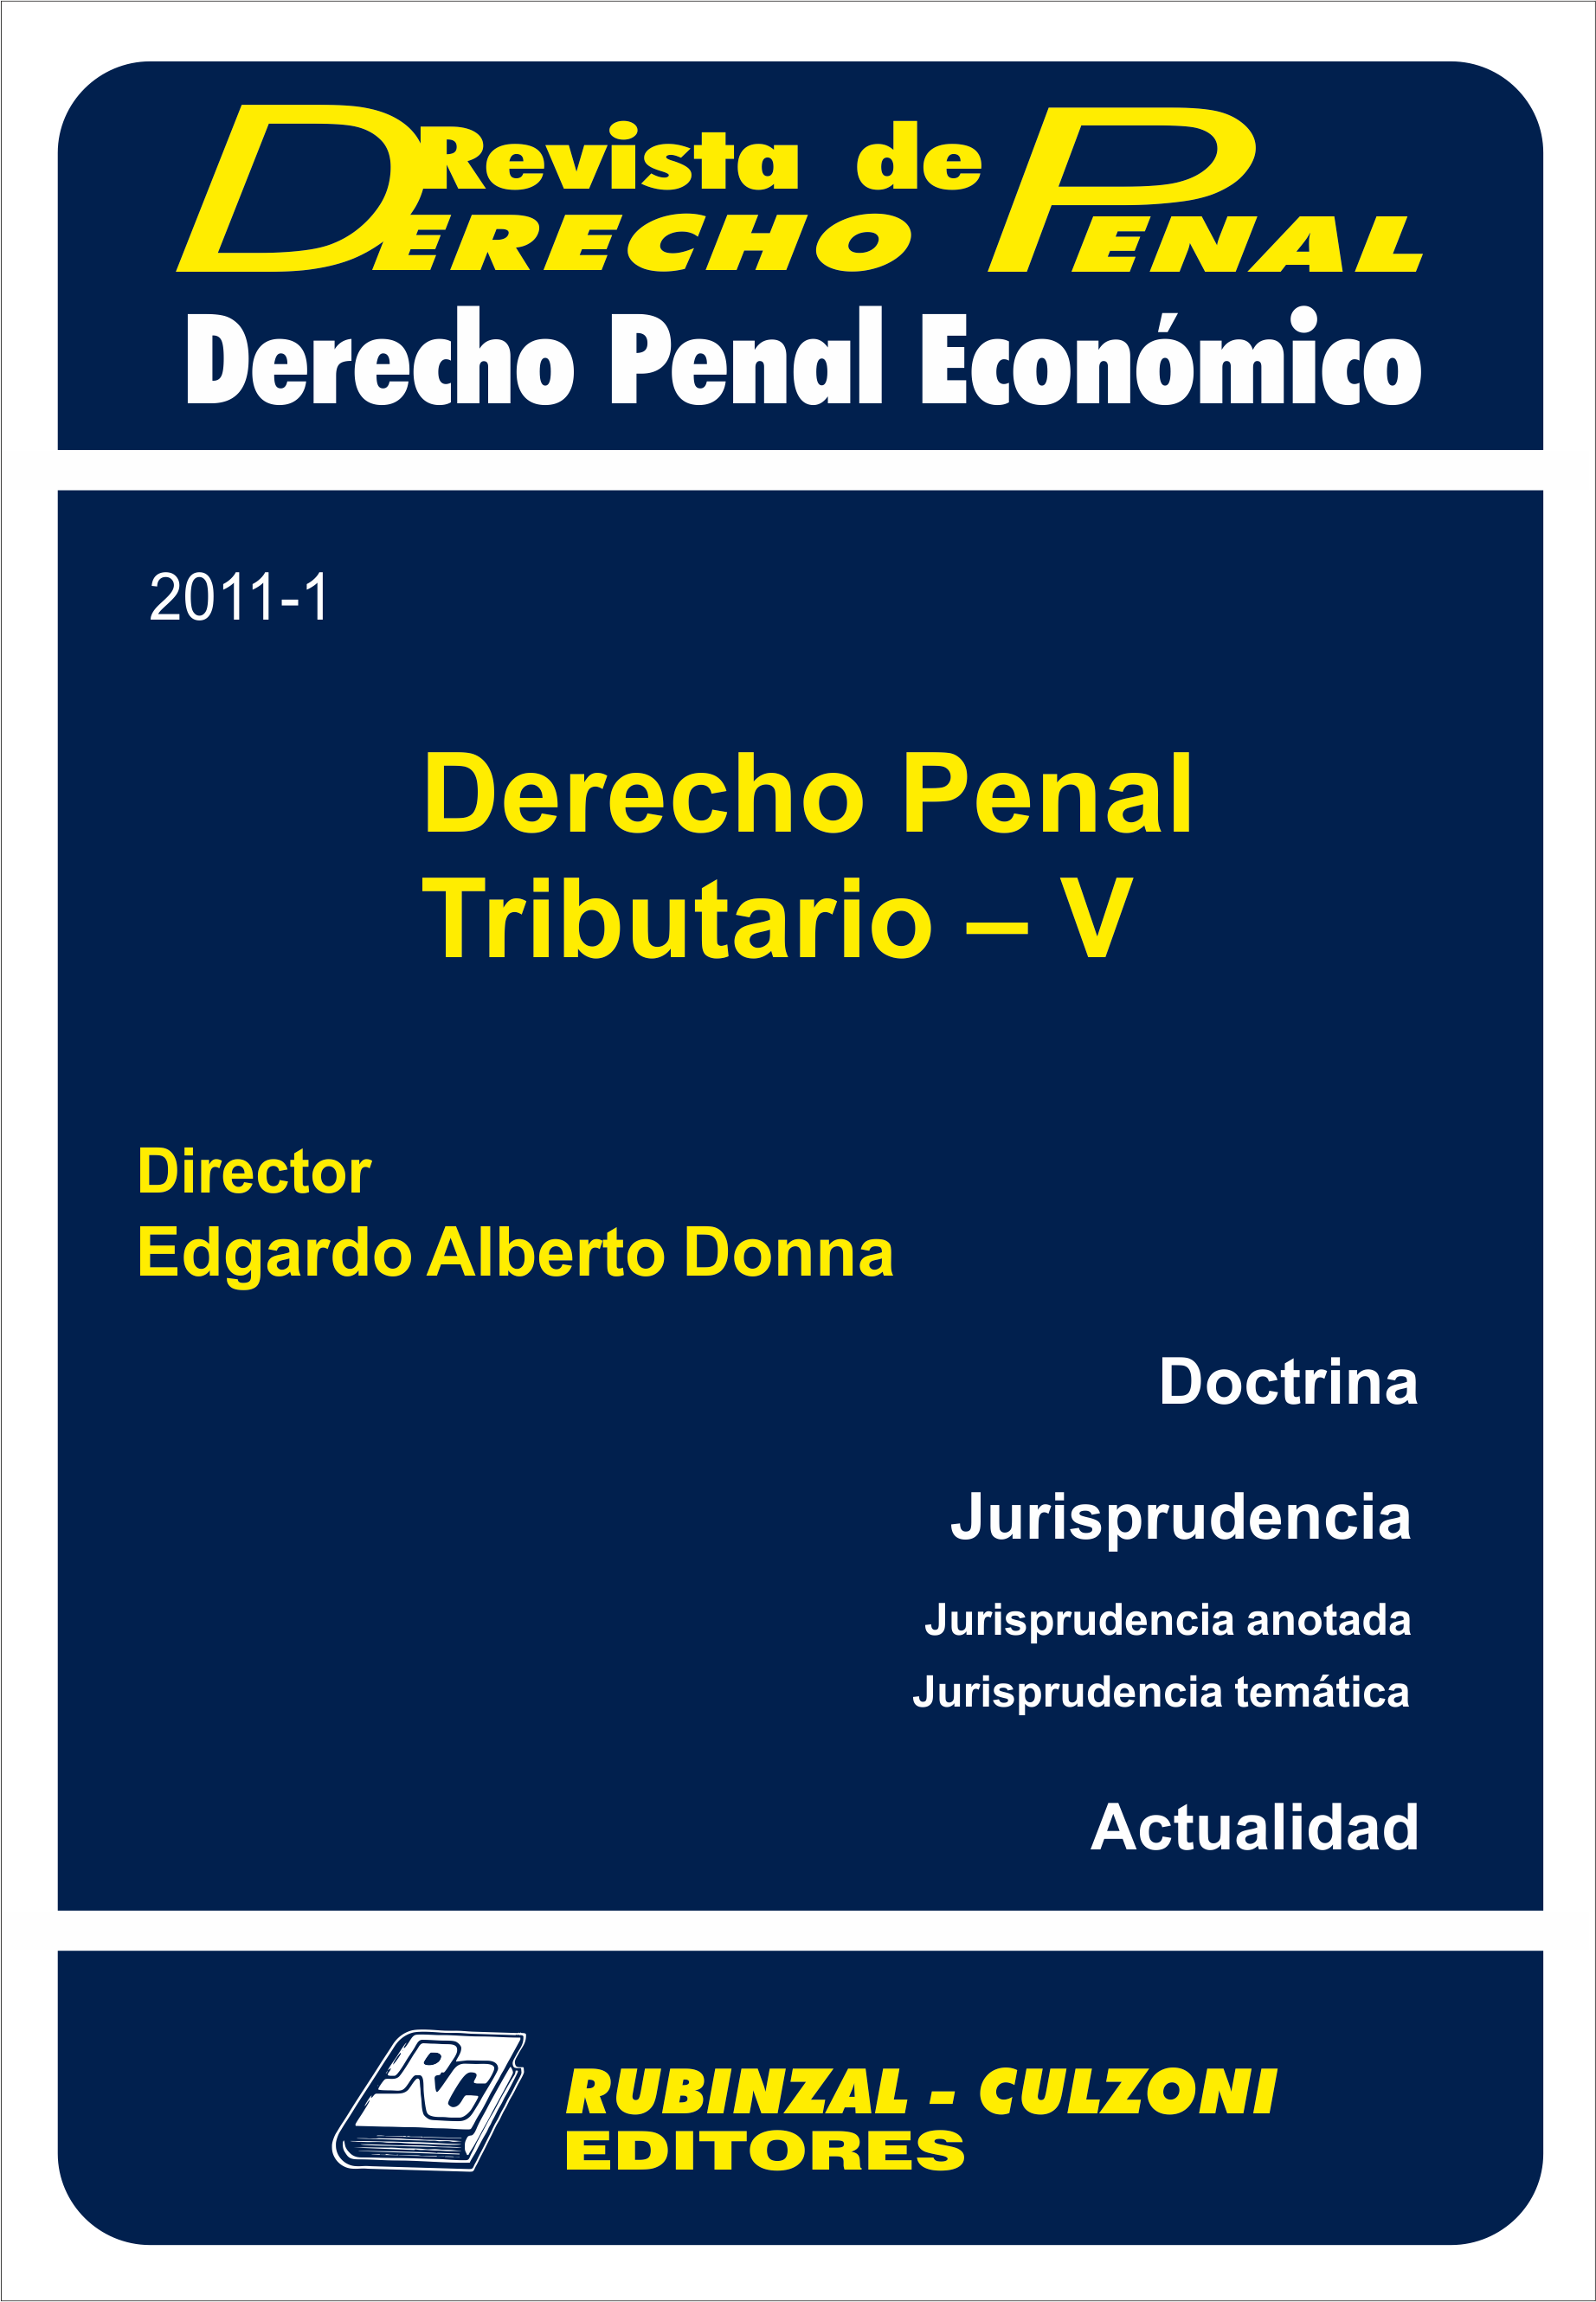 Revista de Derecho Penal Económico - Derecho Penal Tributario - V